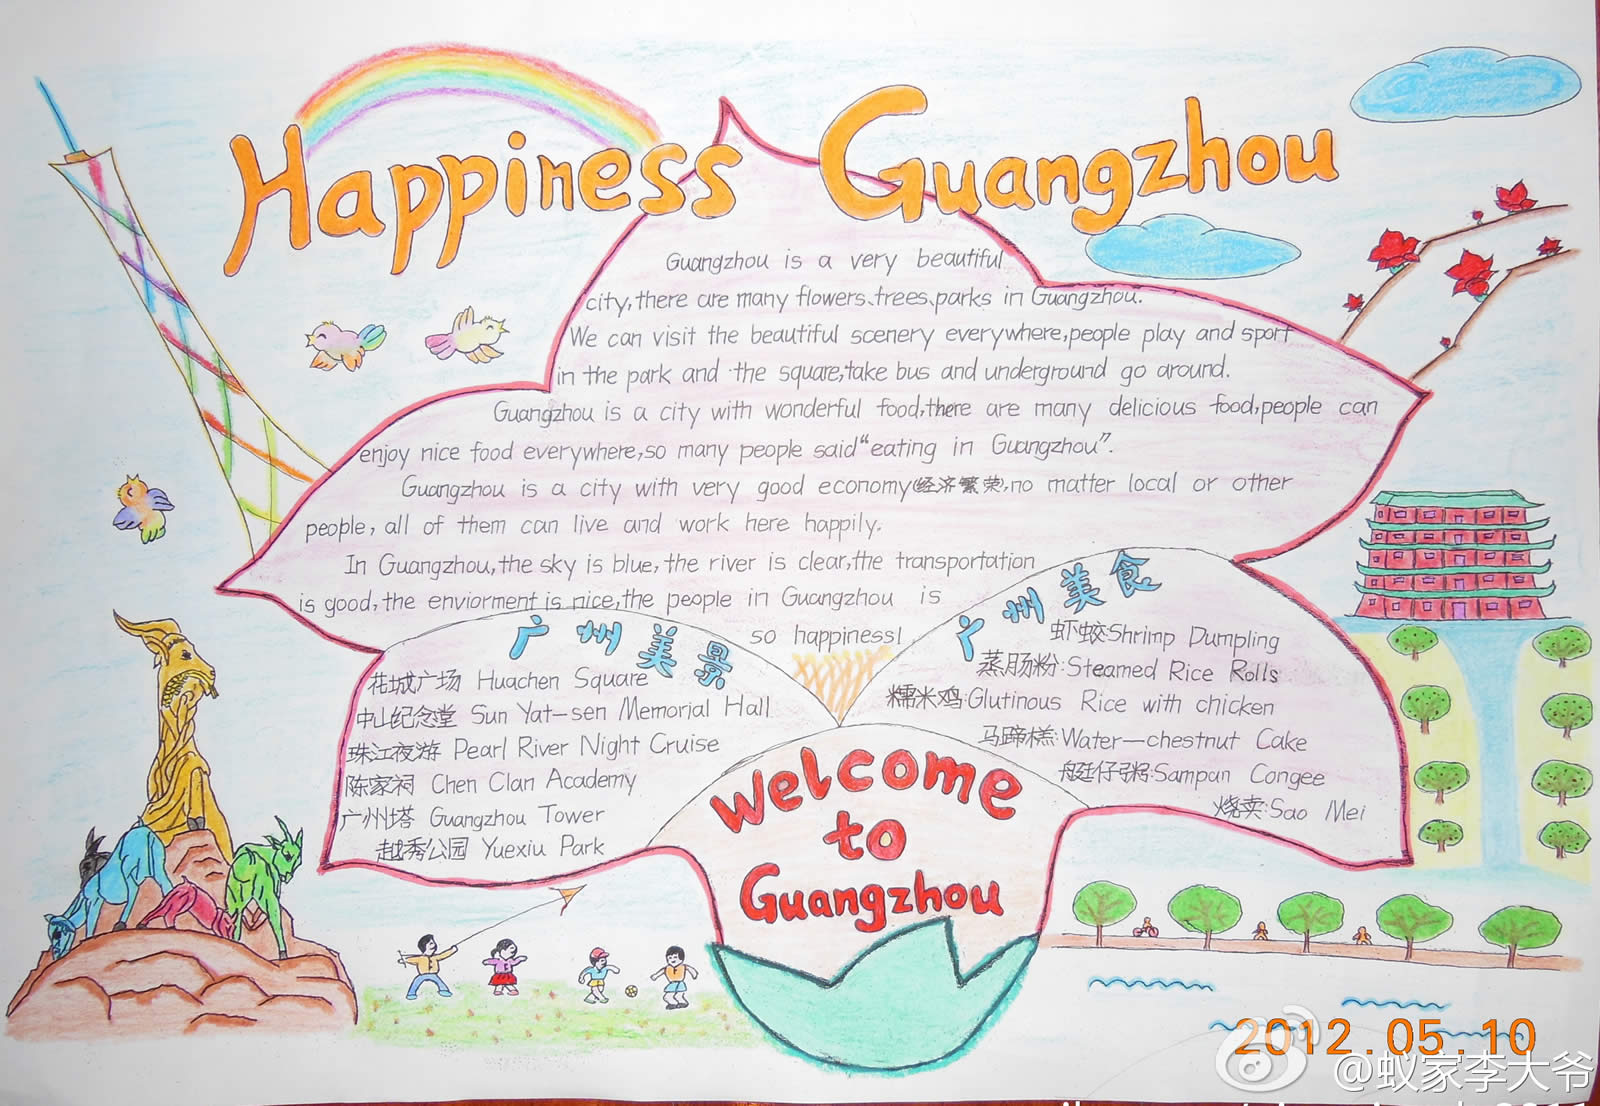 happiness guangzhou 英语手抄报,愉快的广州生活,介绍广州美景